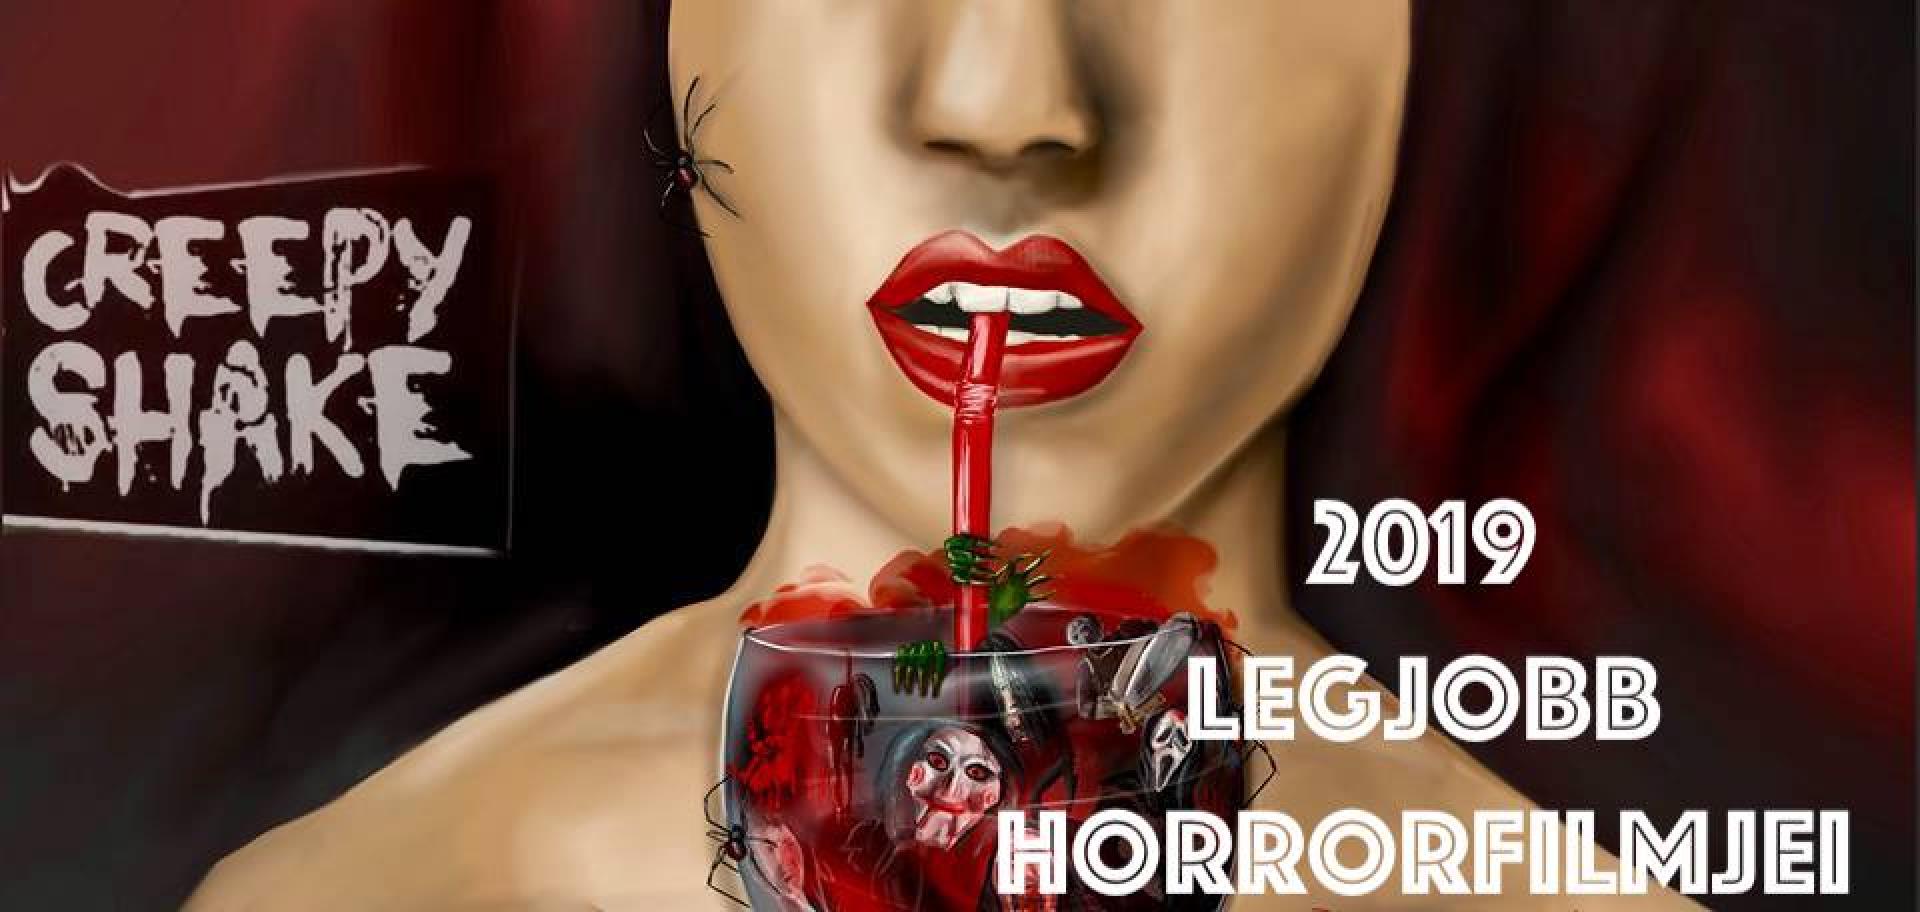 2019 legjobb horrorfilmjei